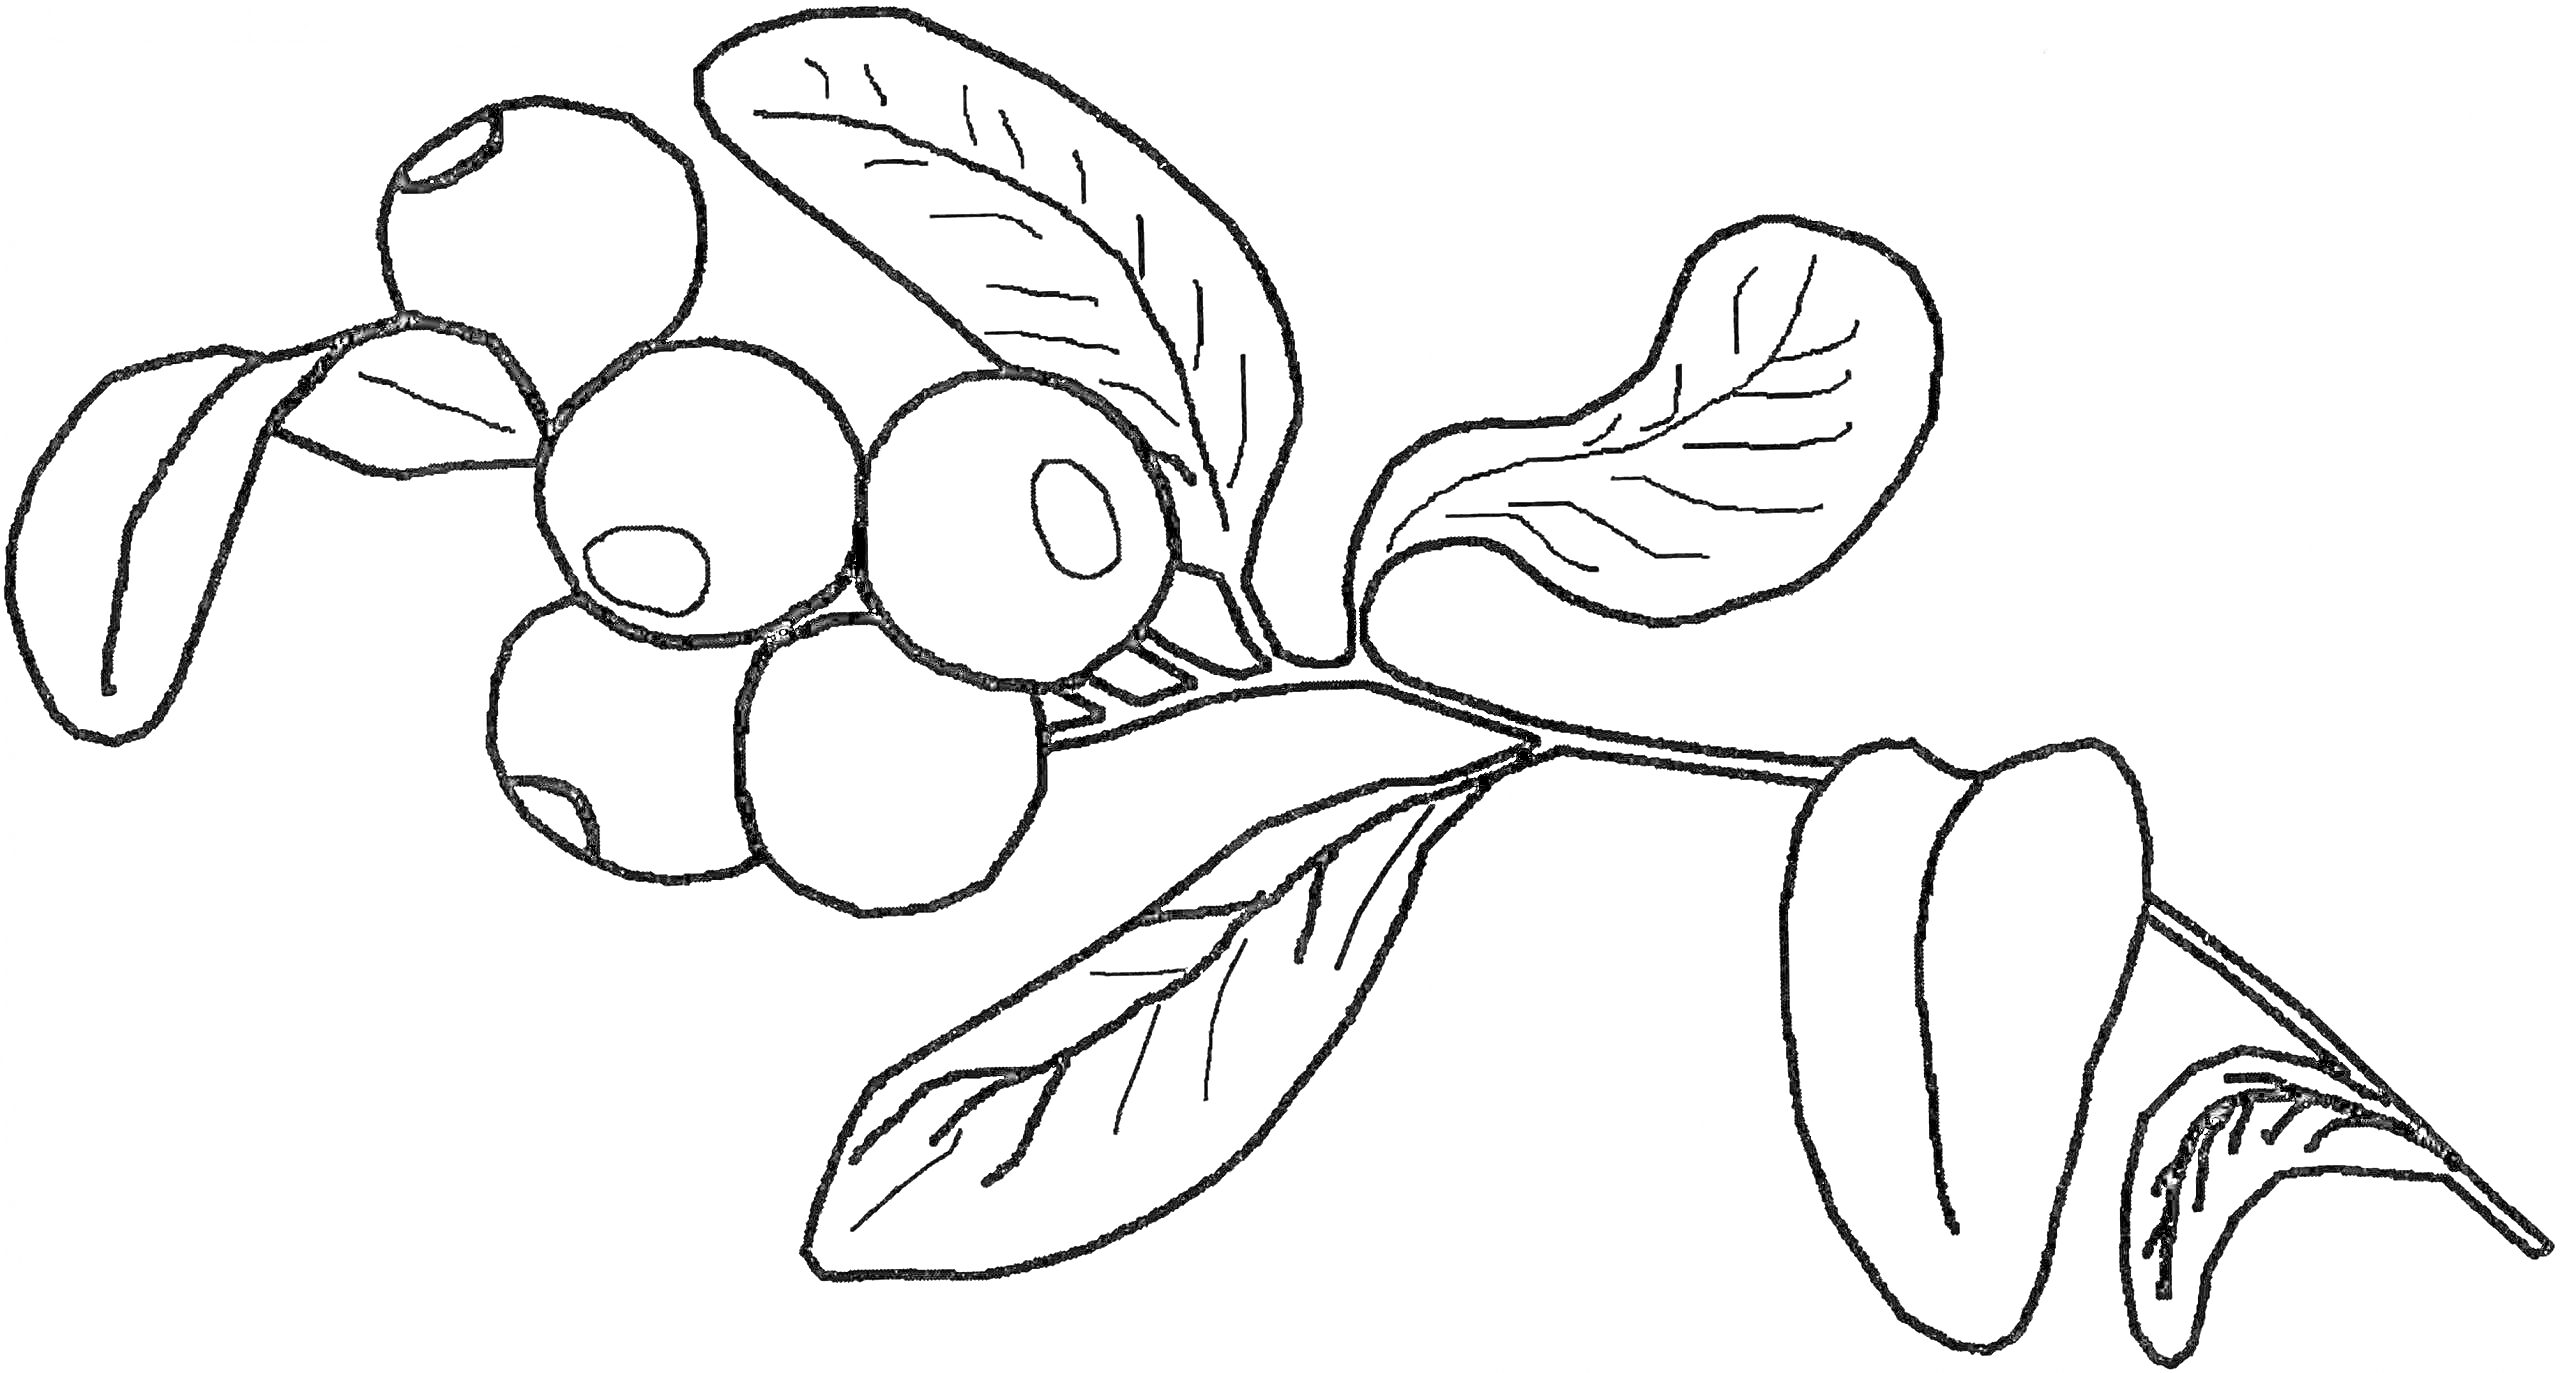 Веточка черники с ягодами и листьями